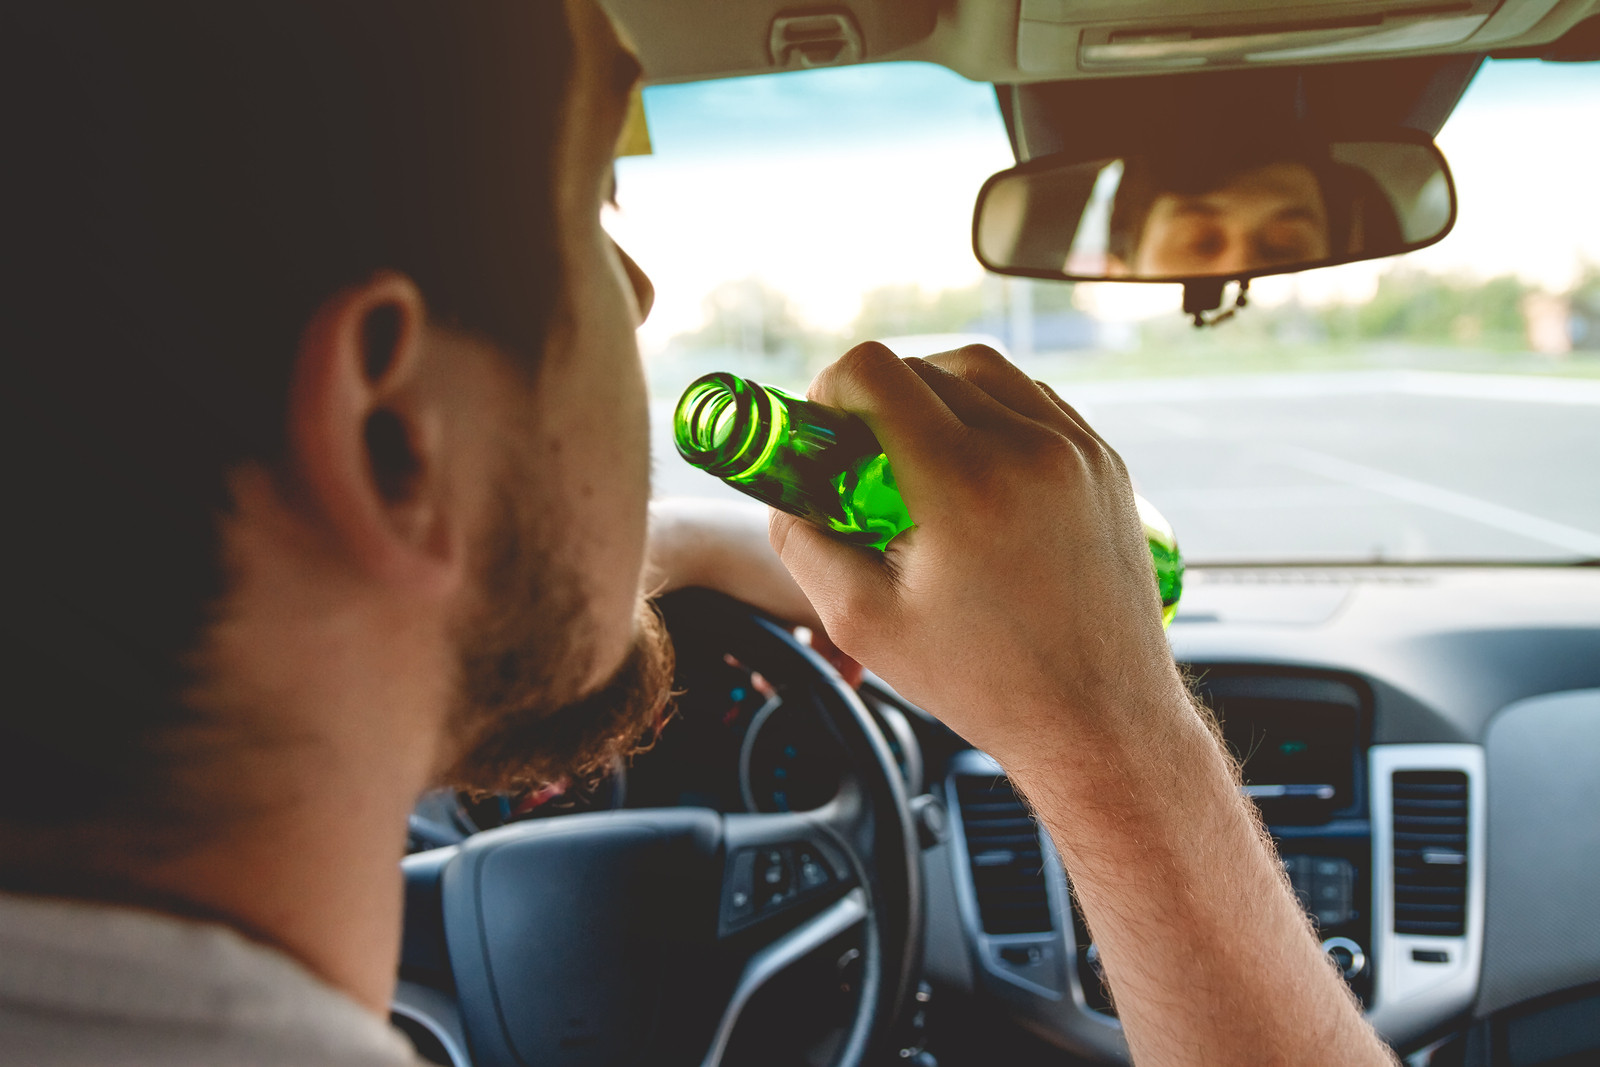 Αυξημένος ο κίνδυνος τροχαίων κατά τη διάρκεια των εορτών – Ποιο είναι το όριο στην κατανάλωση αλκοόλ;